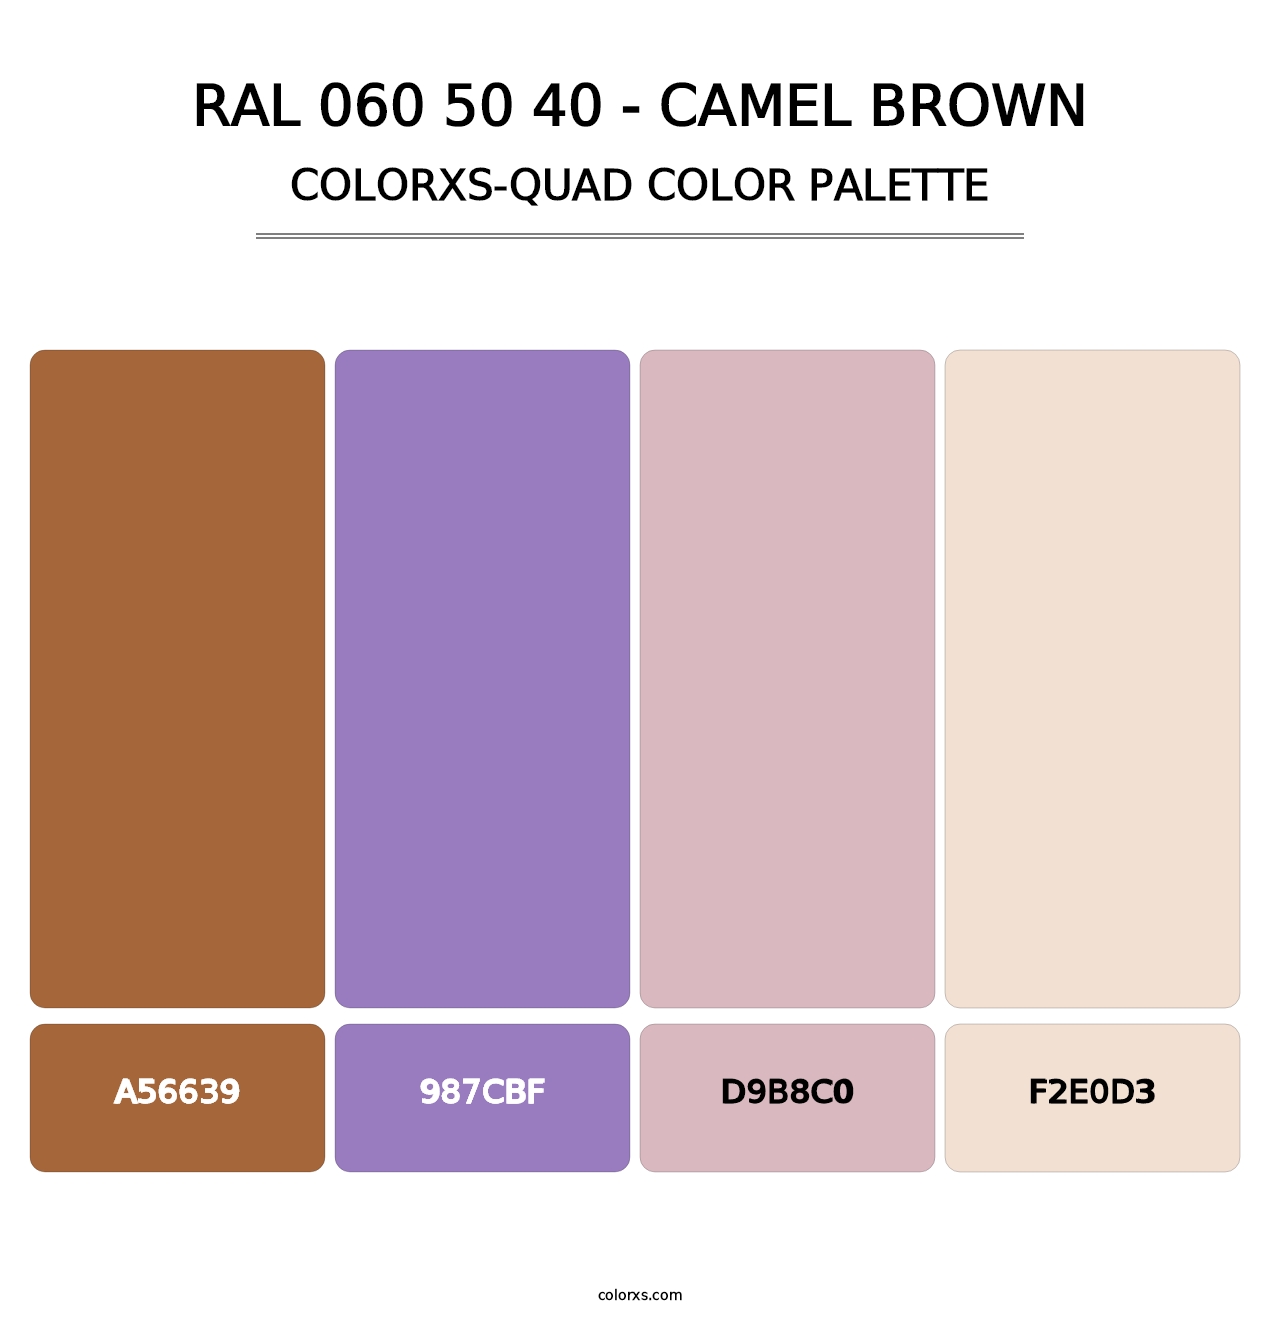 RAL 060 50 40 - Camel Brown - Colorxs Quad Palette